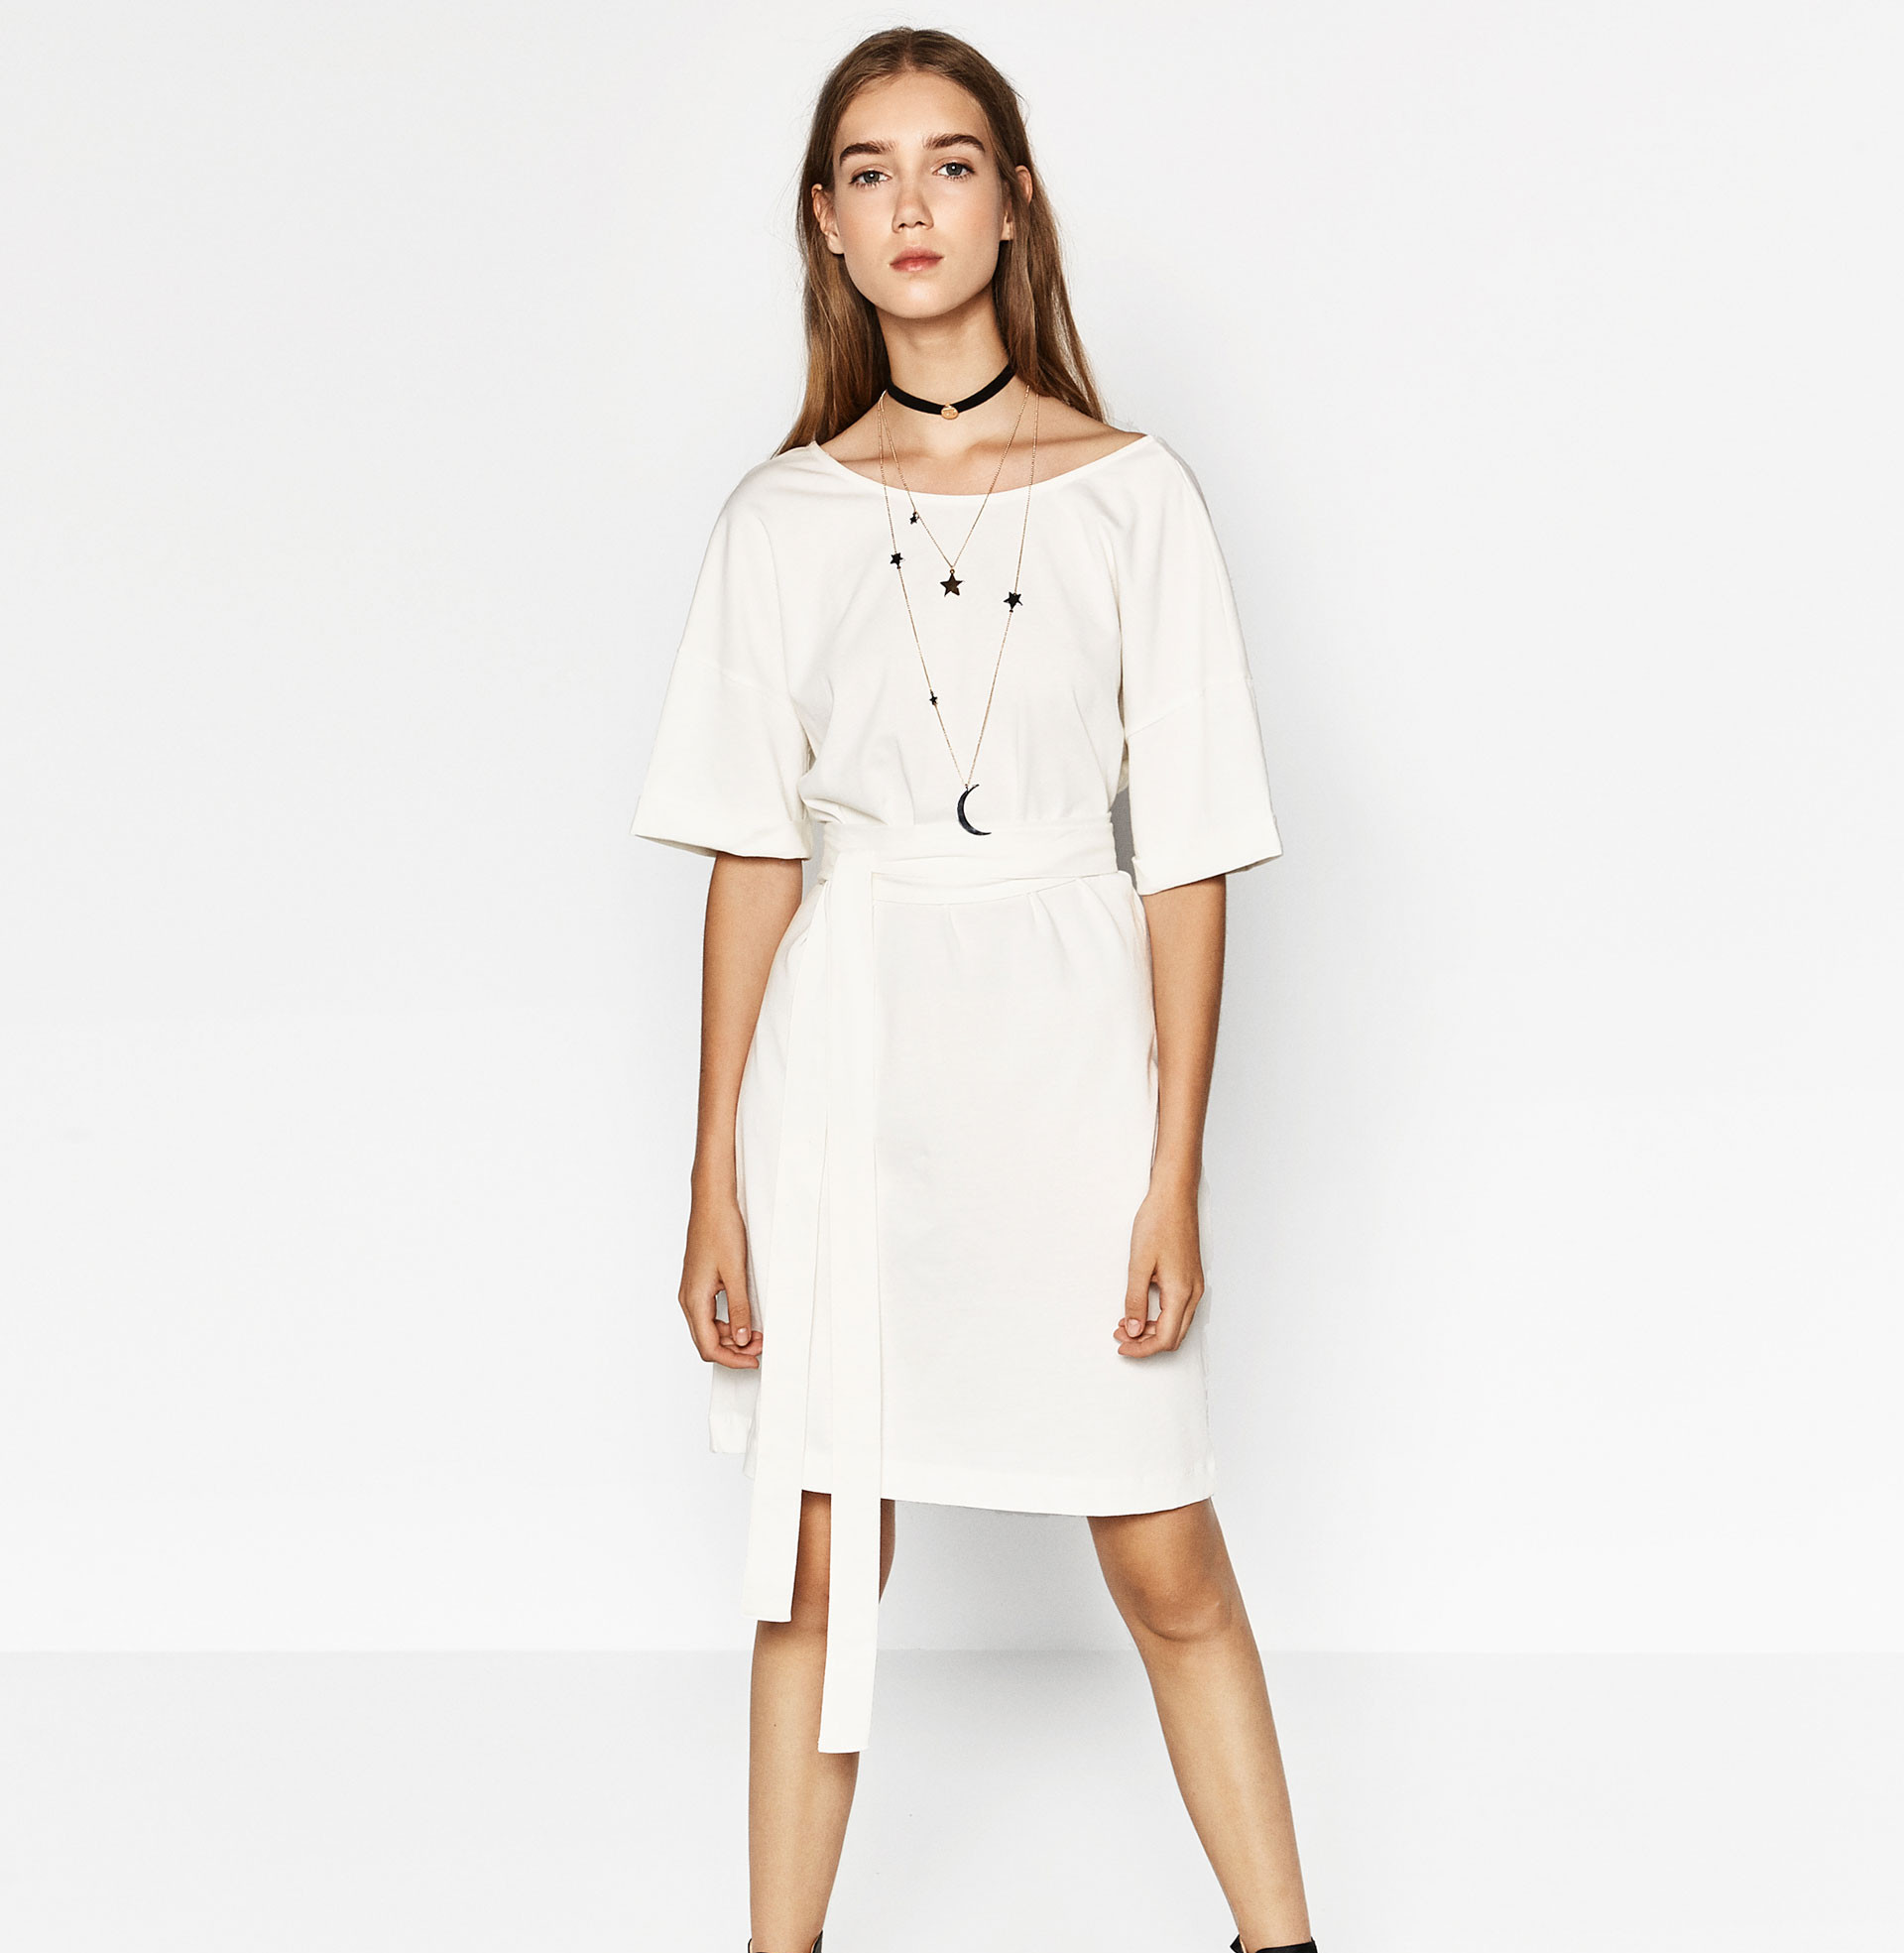 short white dress design